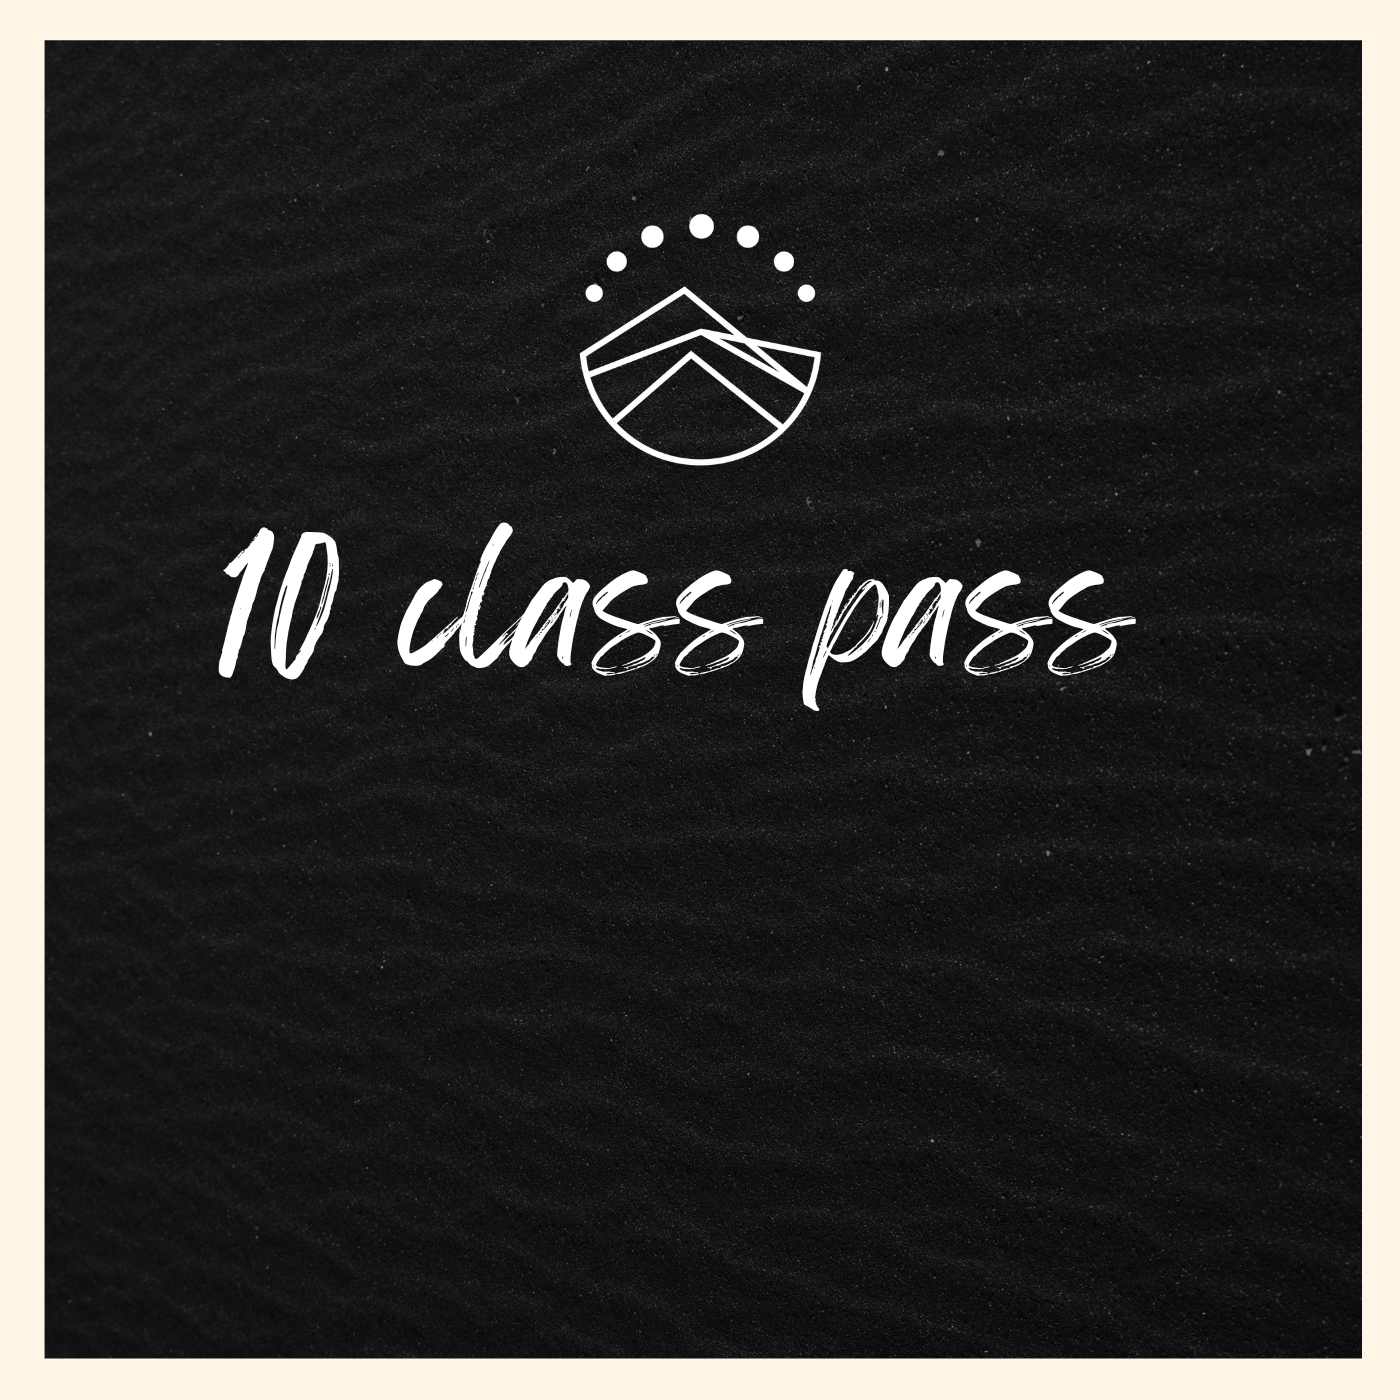 10 Class Pass